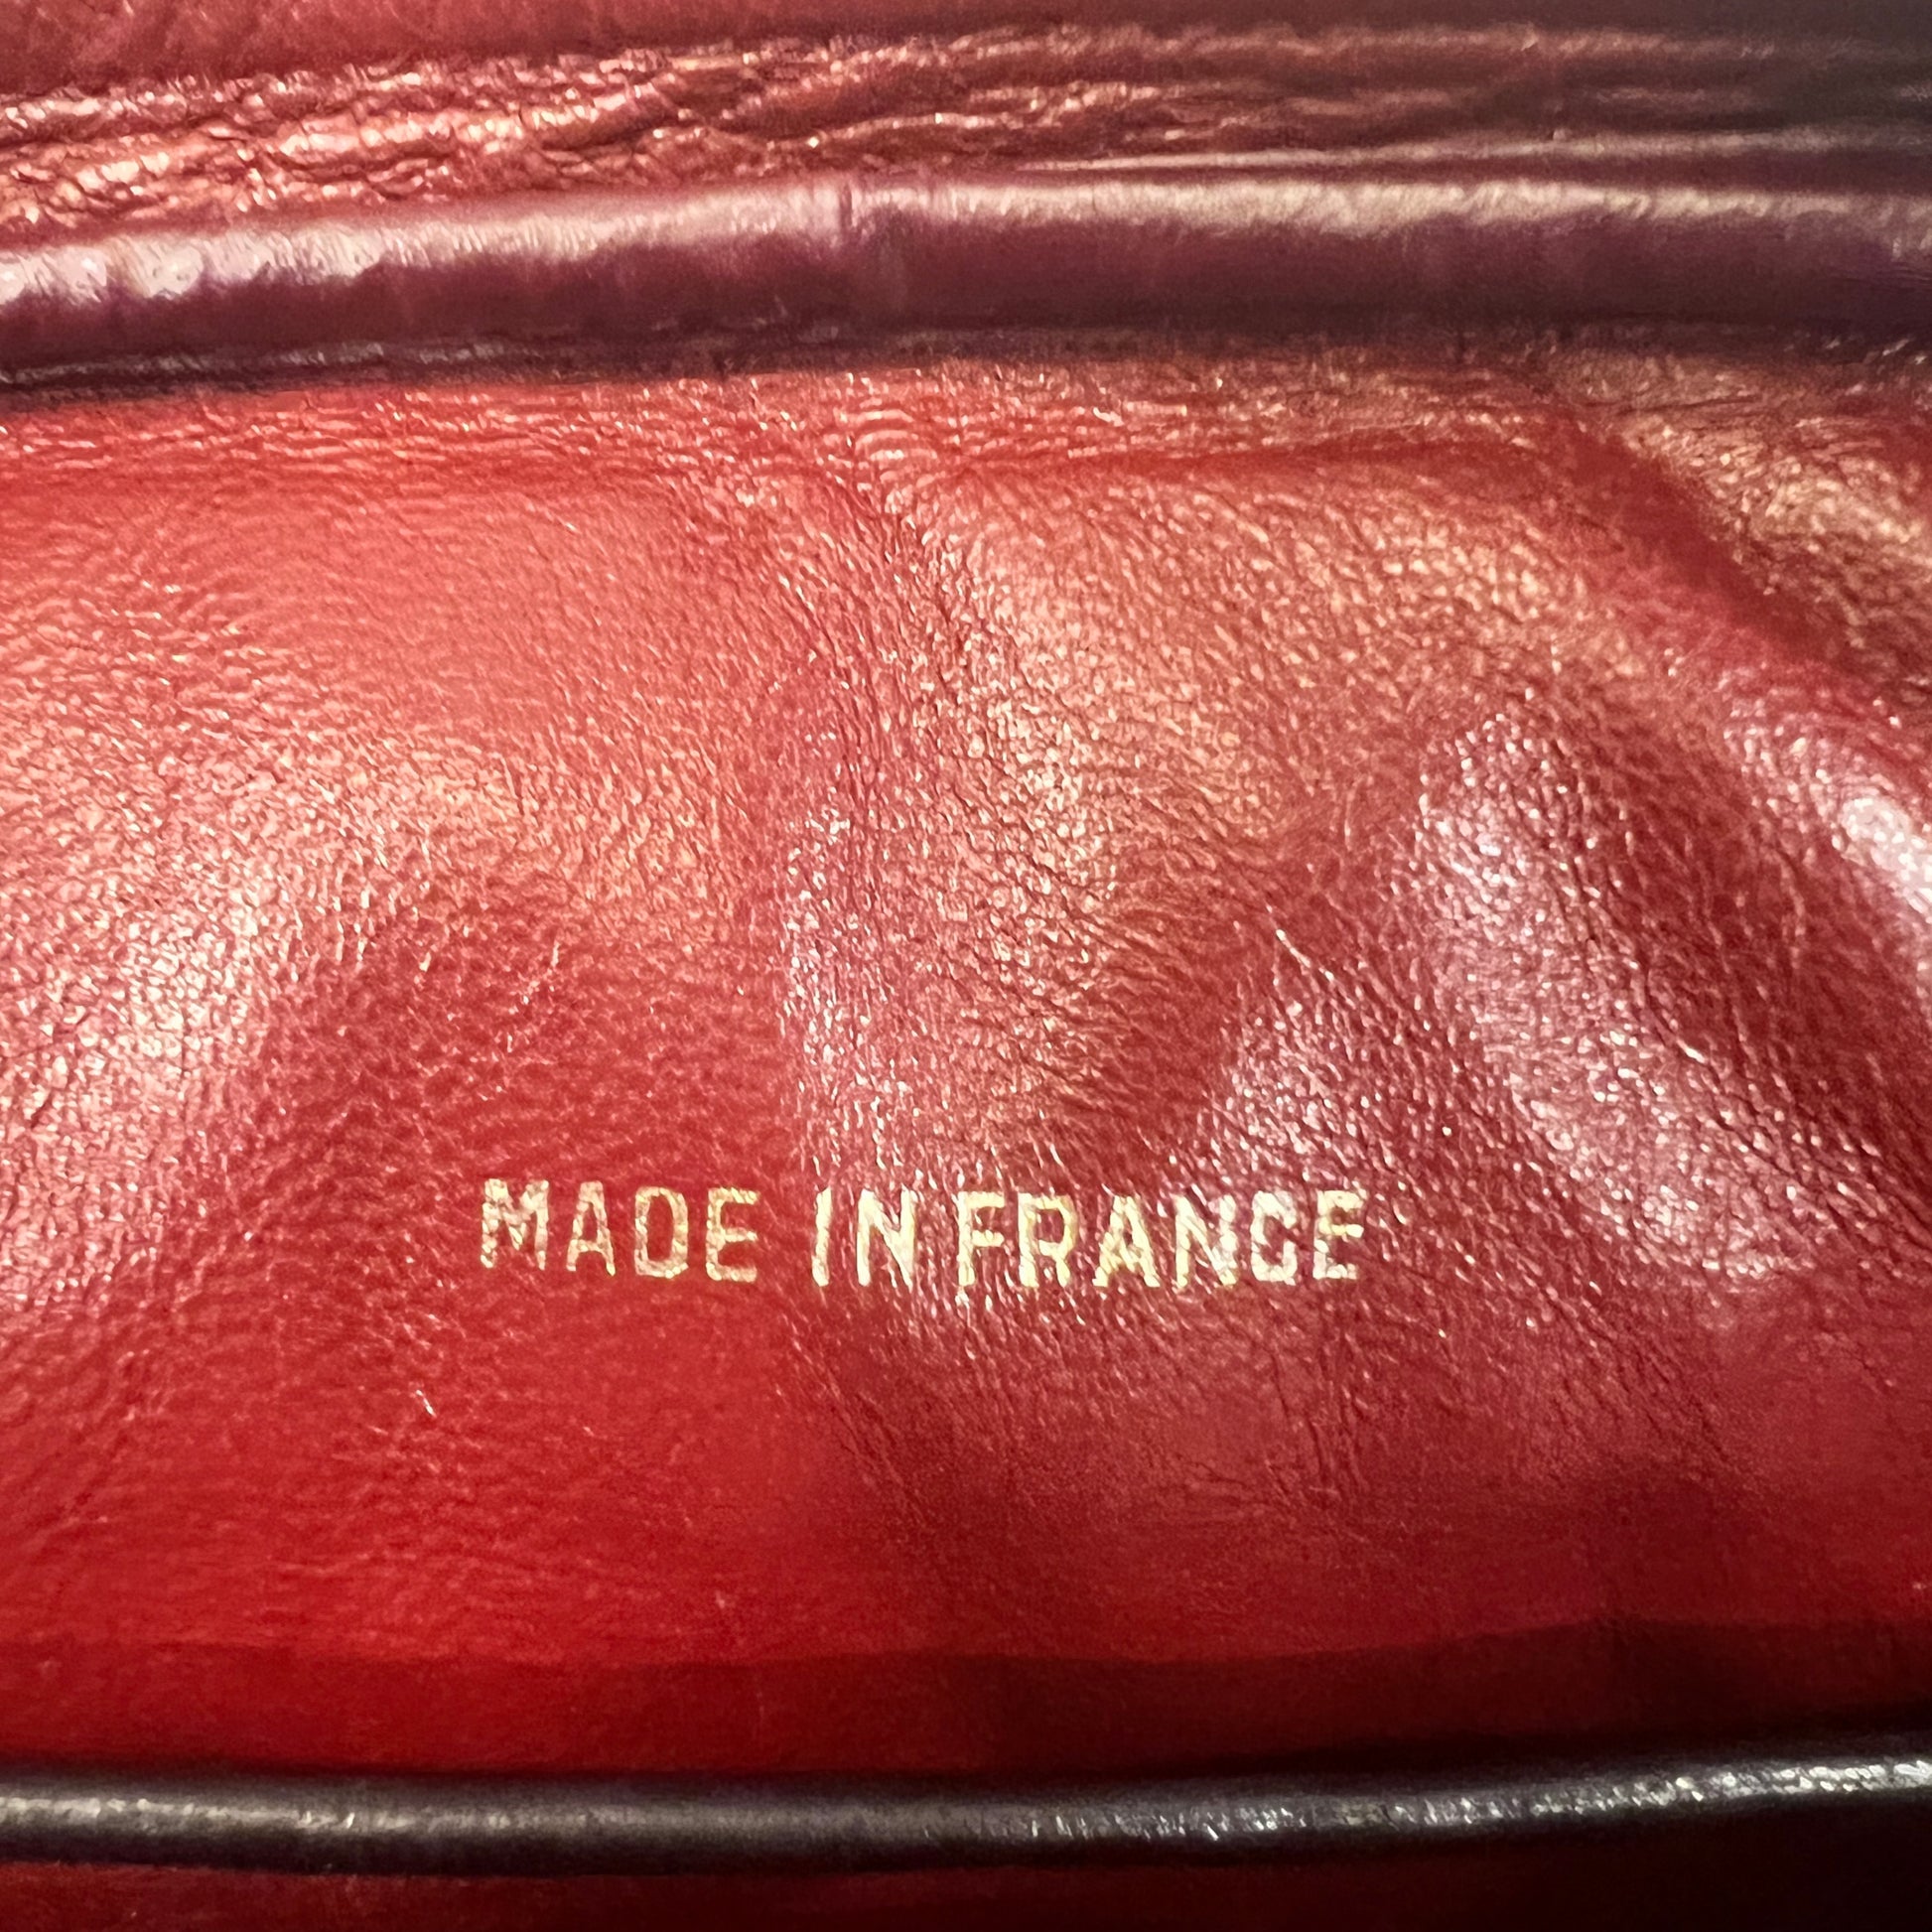 Chanel Vintage Camera Bag – ALC Luxury